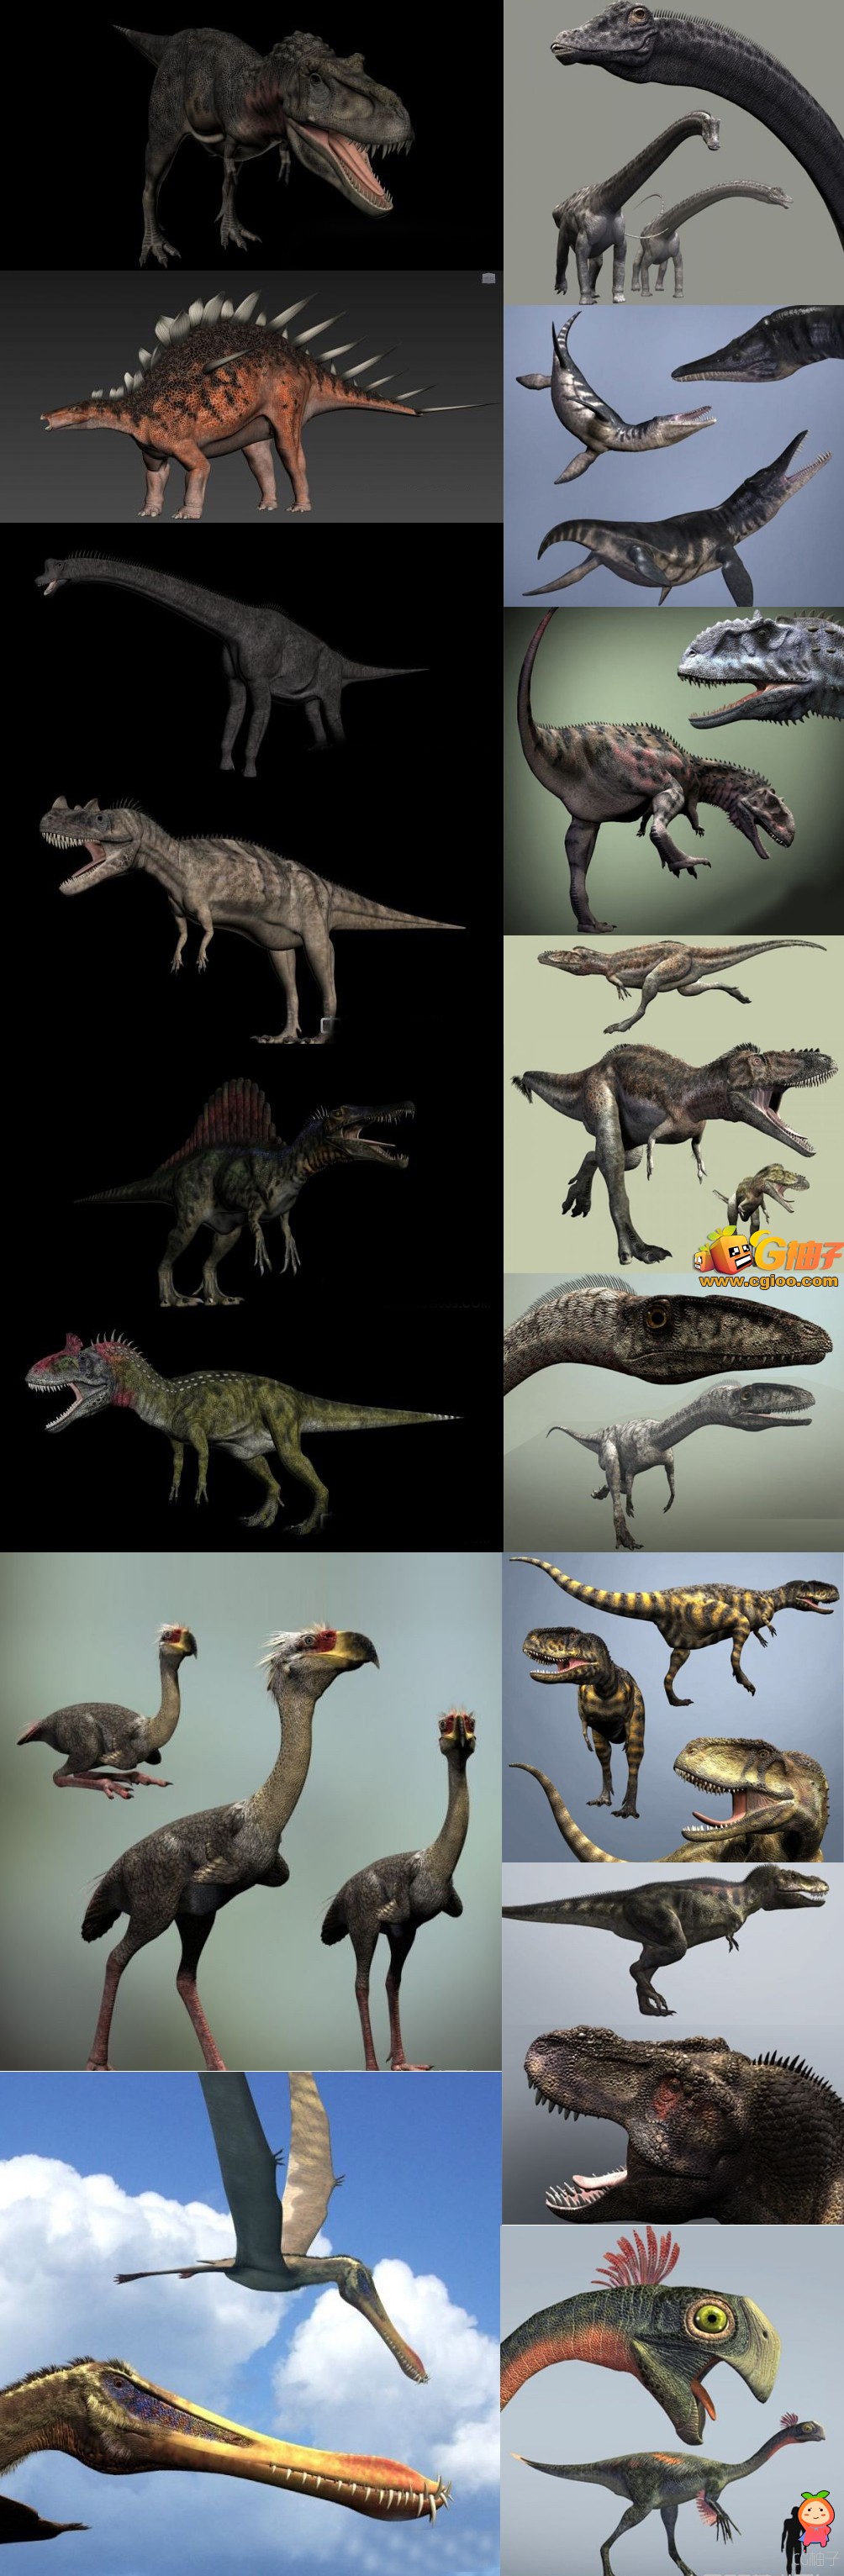 恐龙3D模型下载,恐龙全套3D角色模型,3dmax动物模型资源